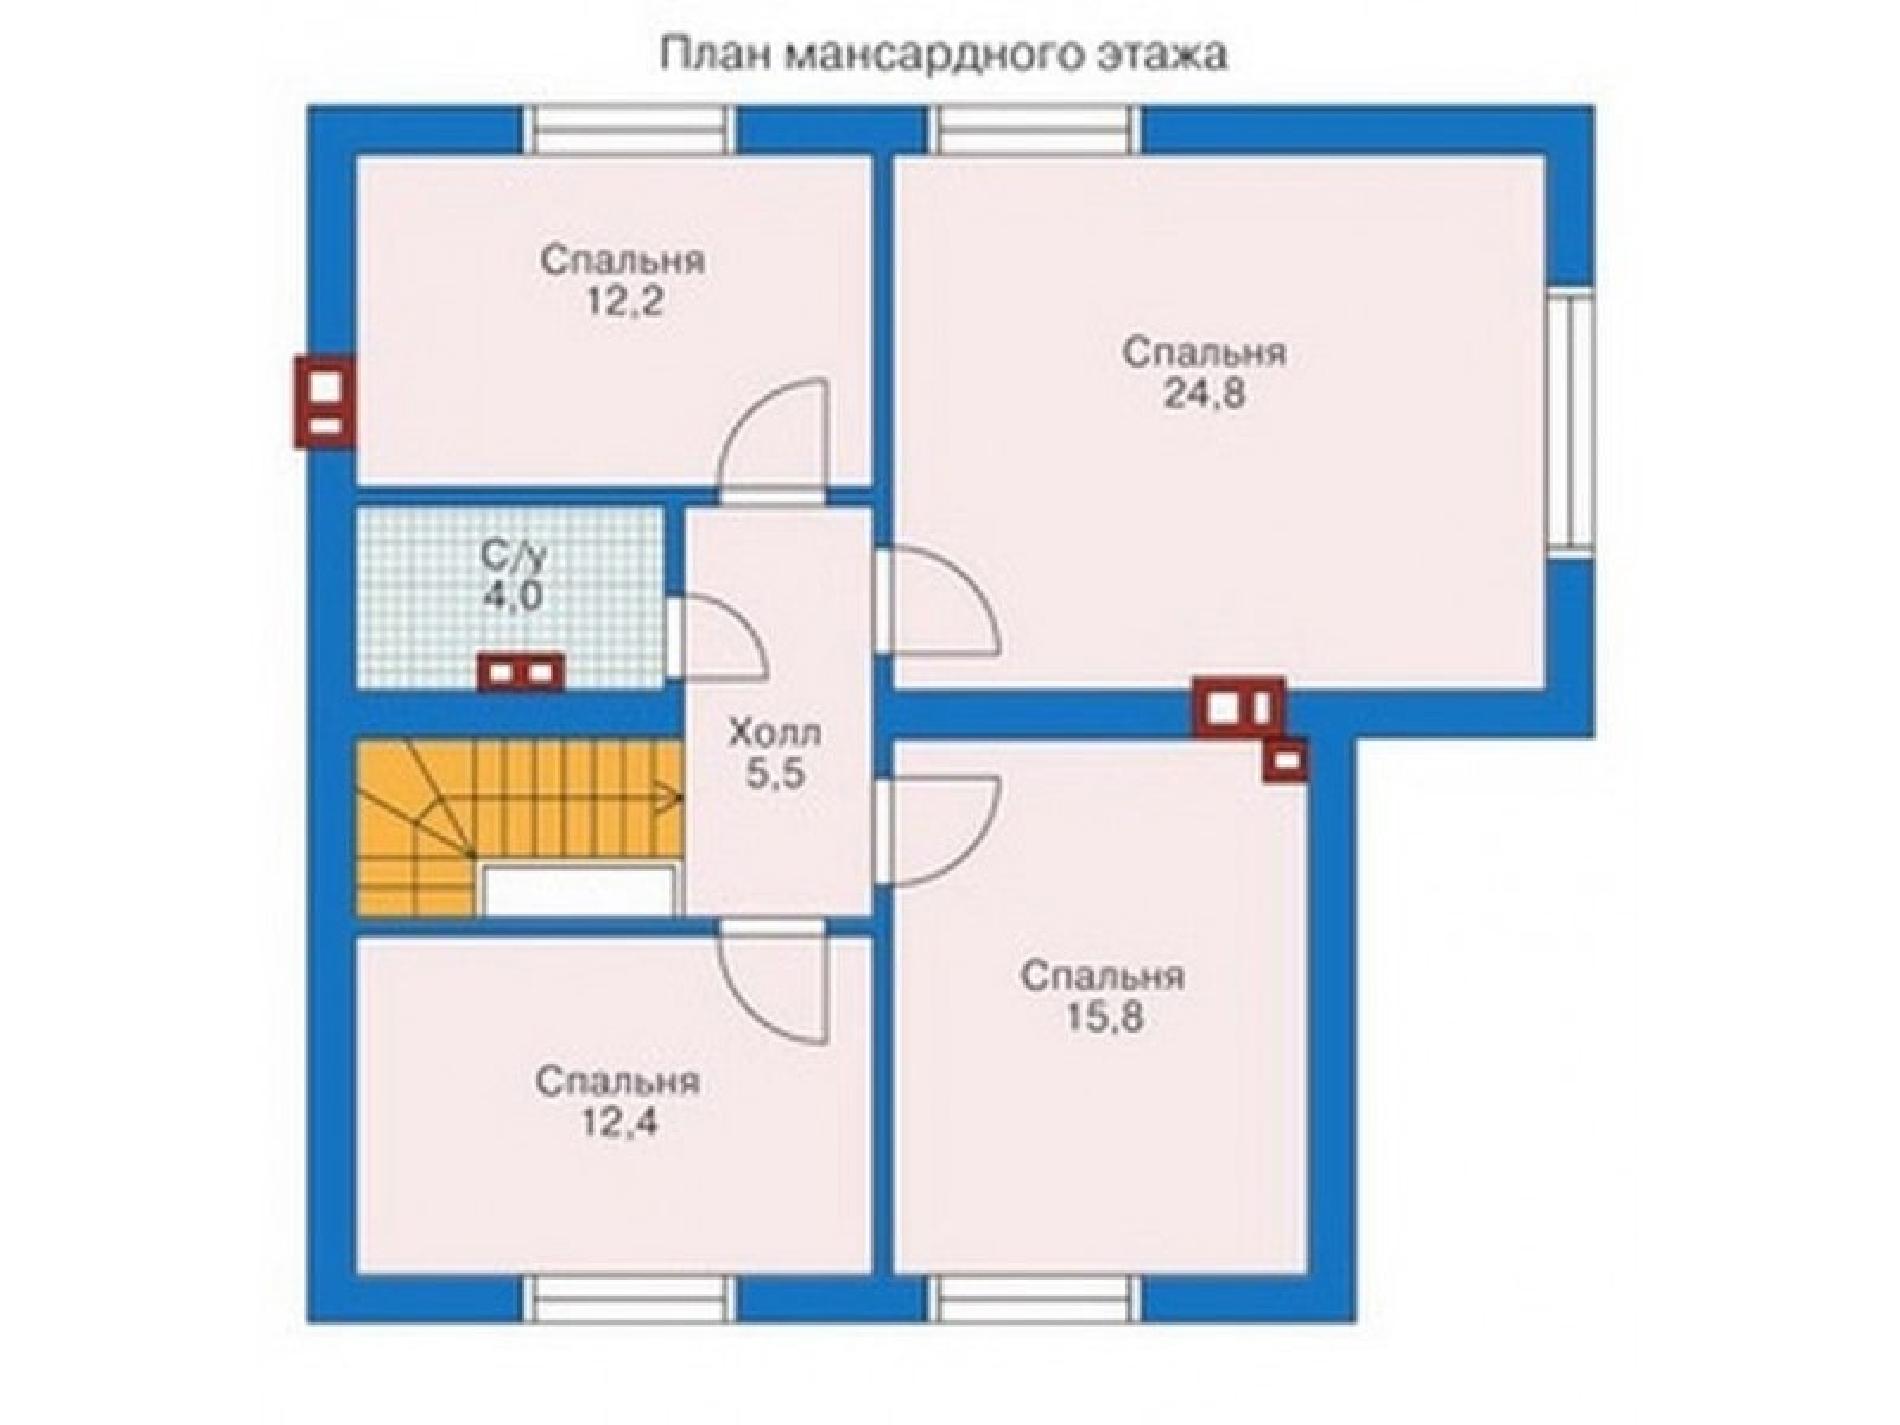 Планировка проекта дома №53-02 53-02_p (2)-min.jpg